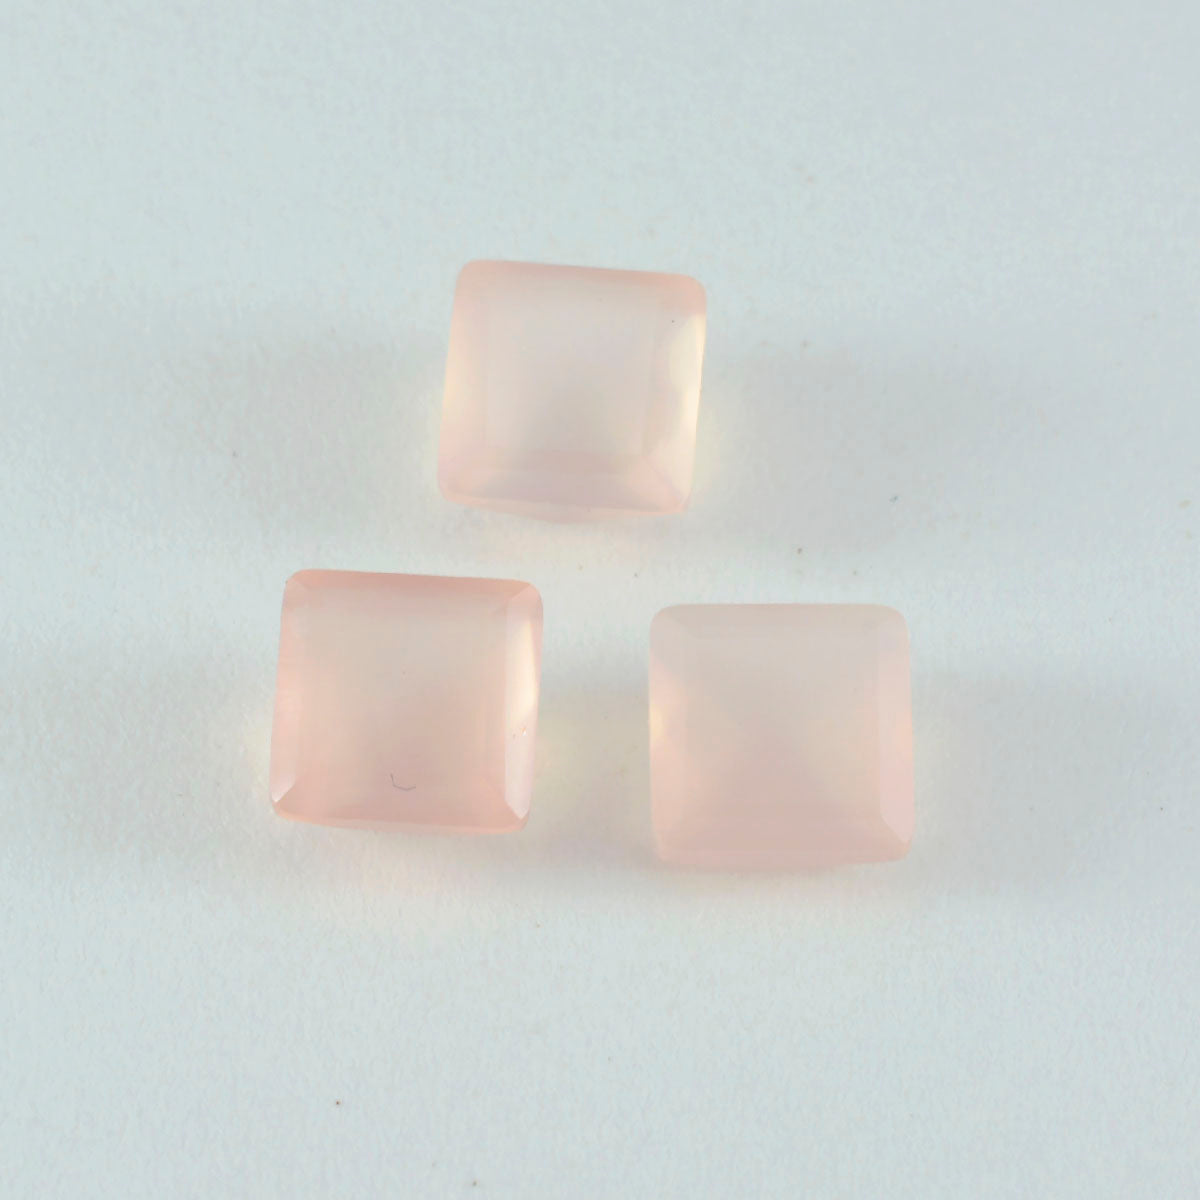 riyogems 1 st rosa rosékvarts facetterad 14x14 mm fyrkantig form fantastisk kvalitetspärla